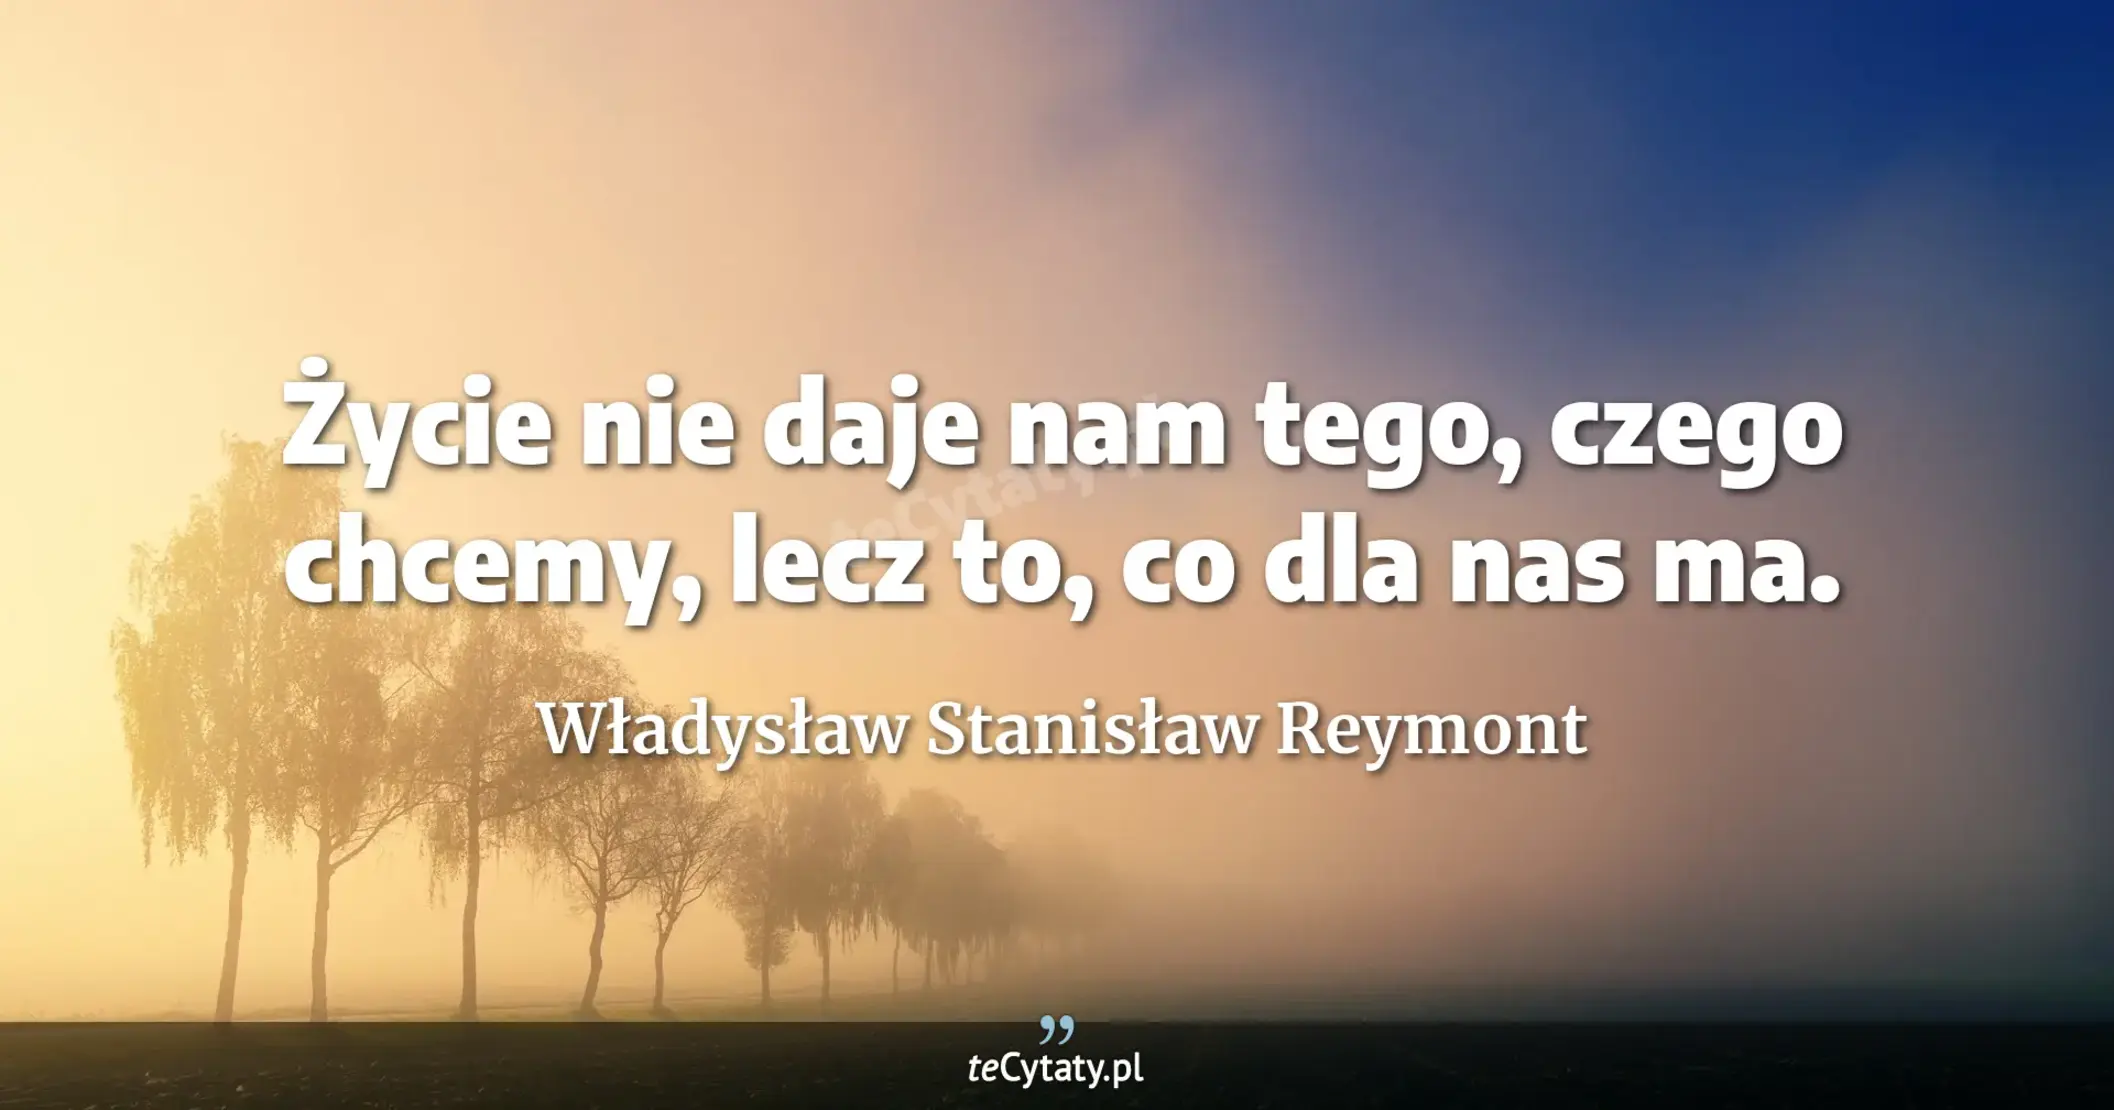 Życie nie daje nam tego, czego chcemy, lecz to, co dla nas ma. - Władysław Stanisław Reymont